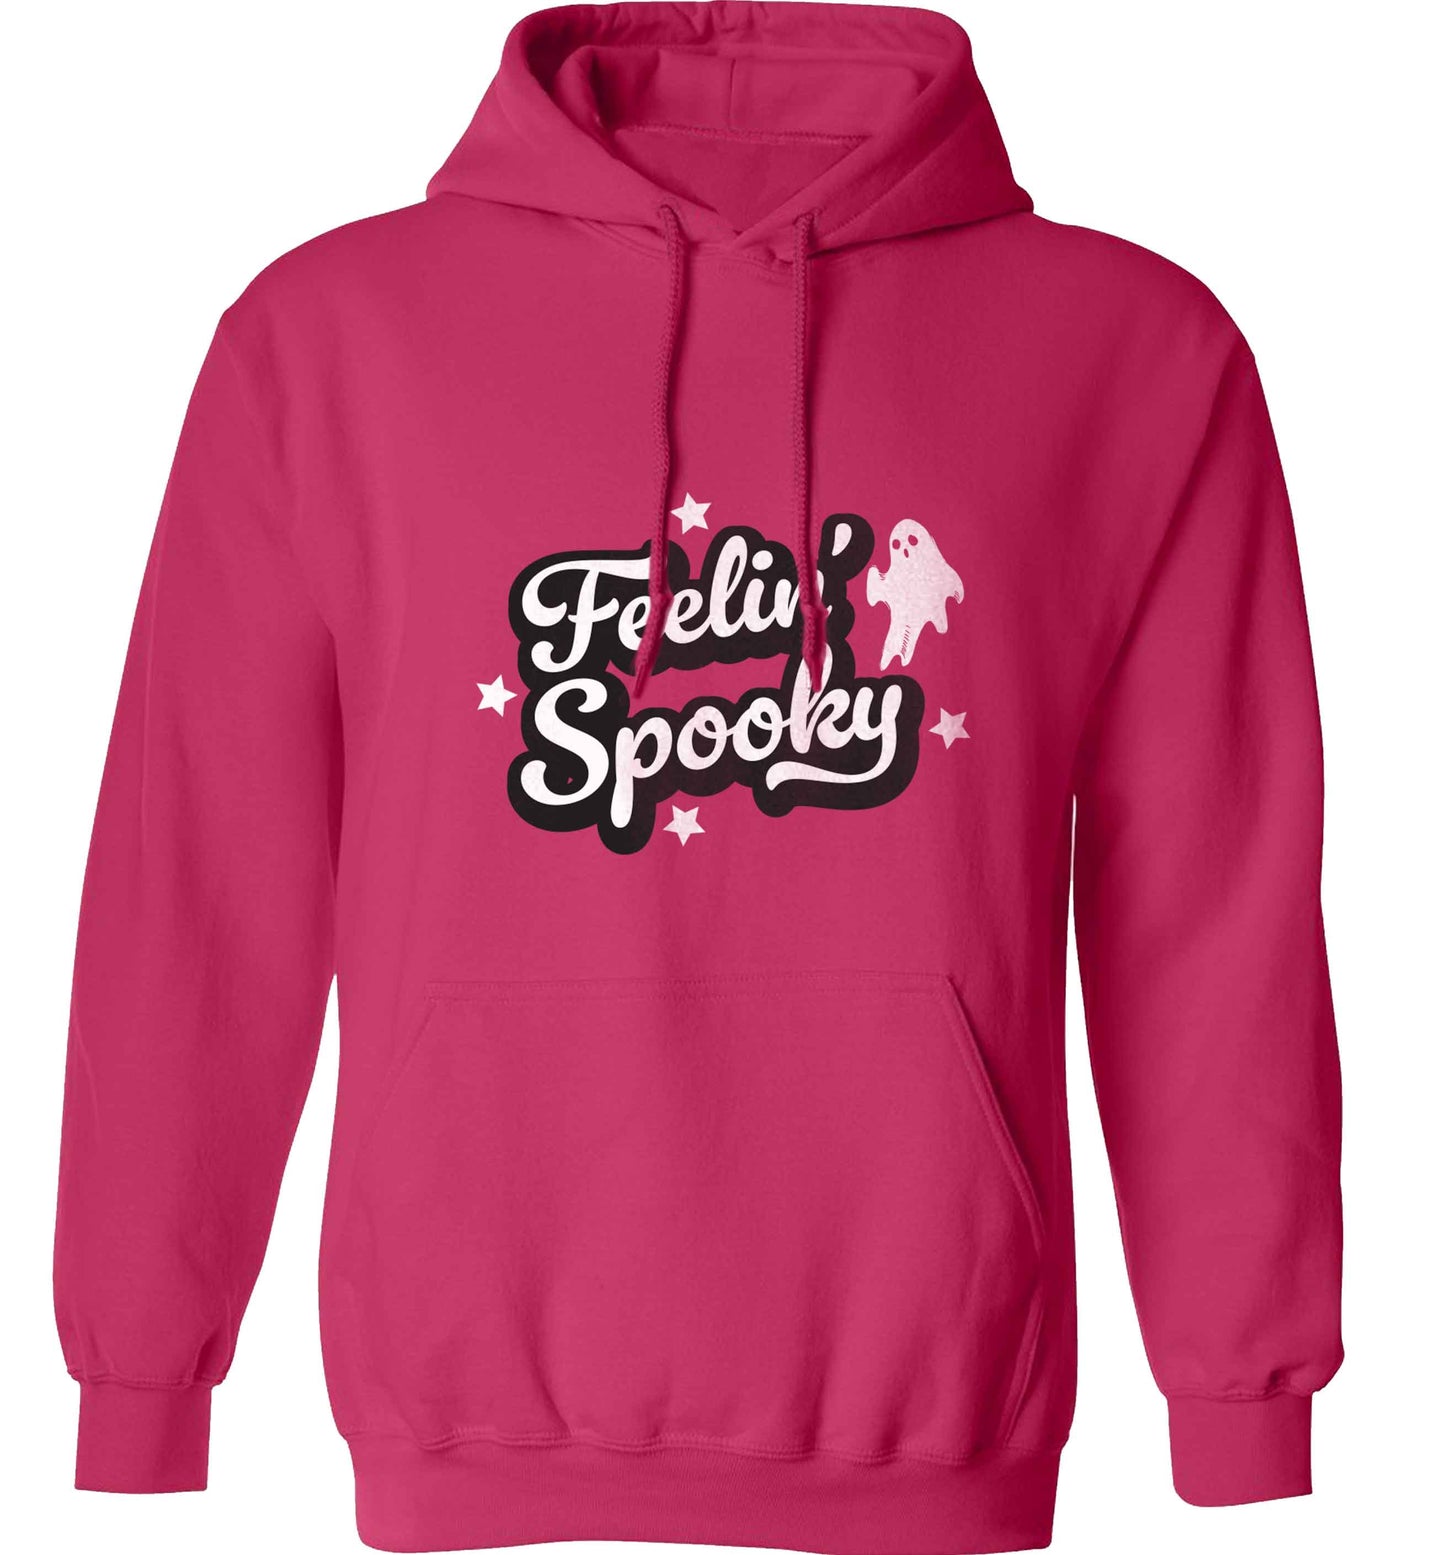 Feelin' Spooky Kit adults unisex pink hoodie 2XL